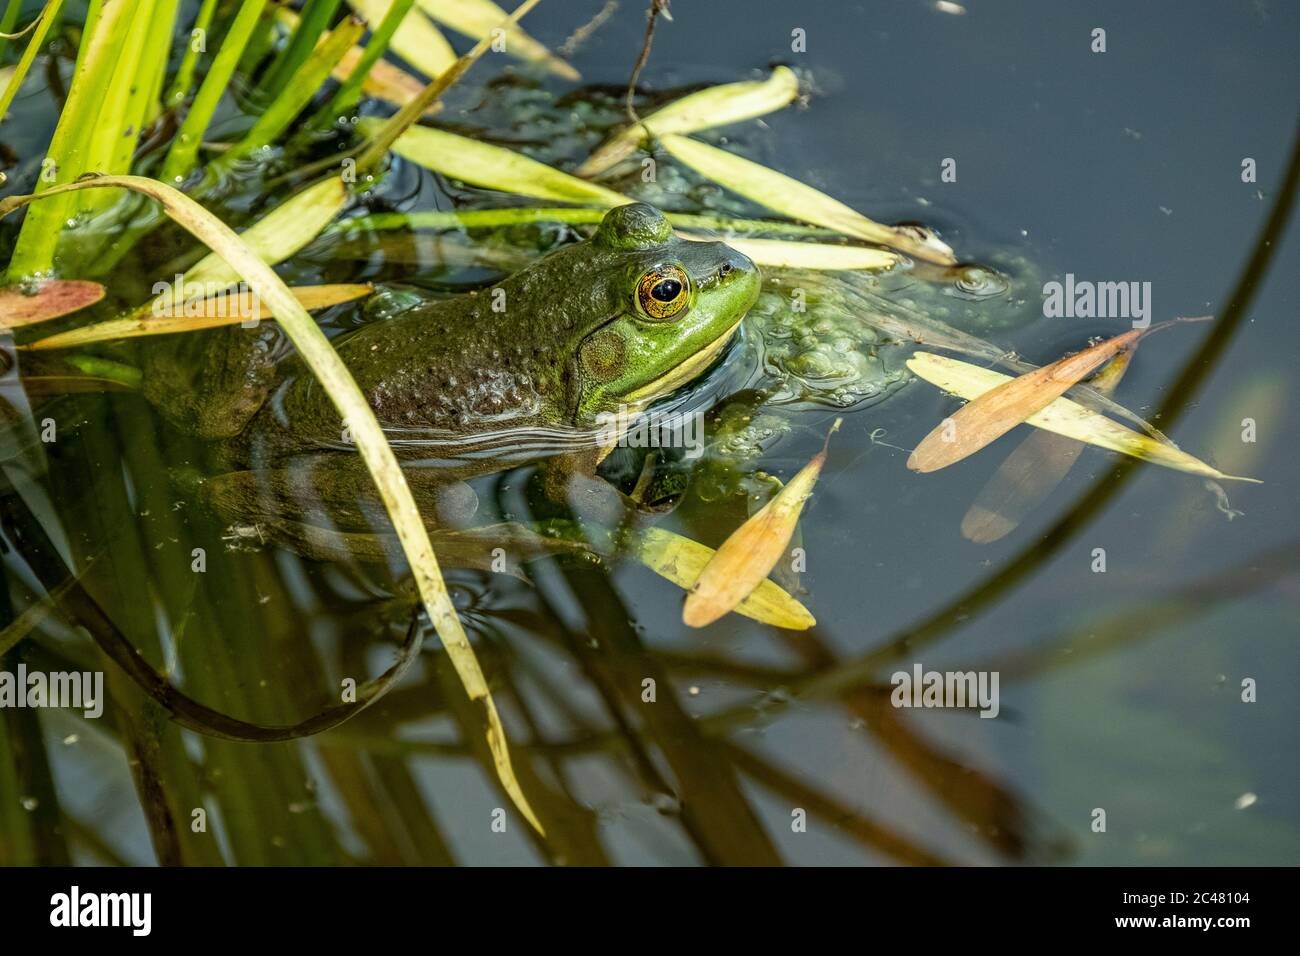 Ein grüner Frosch (Lithobates clamitans, Rana clamitans) in einem kleinen Teich Stockfoto